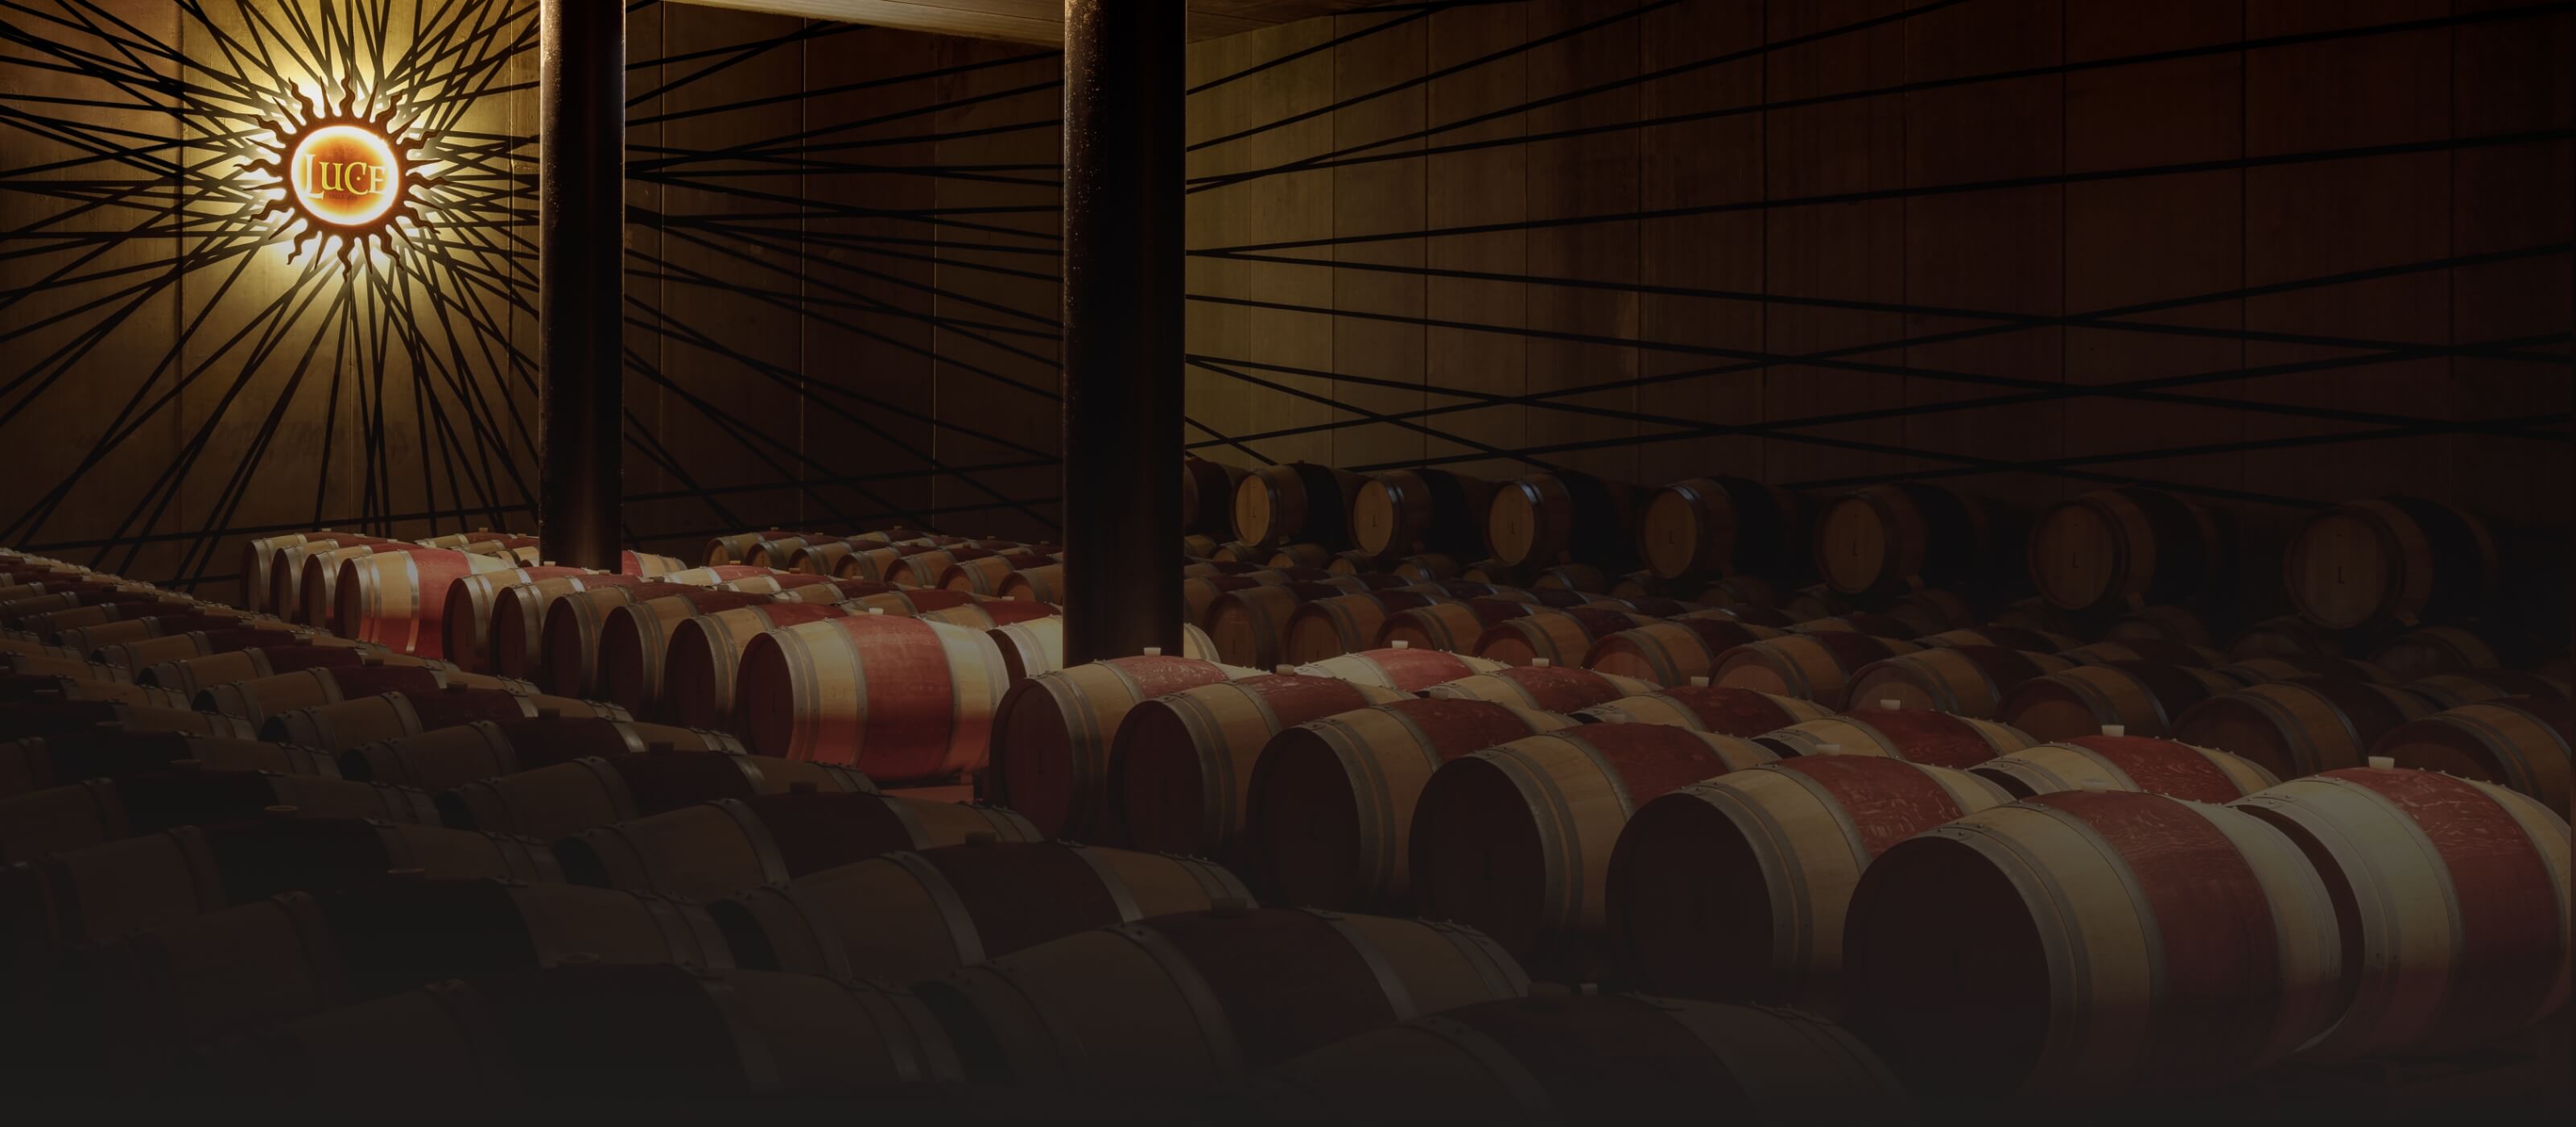 ブランドストーリー テヌータ・ルーチェ 神から与えられた光～ルーチェワインへの情熱と卓越した醸造技術から生まれたワイン